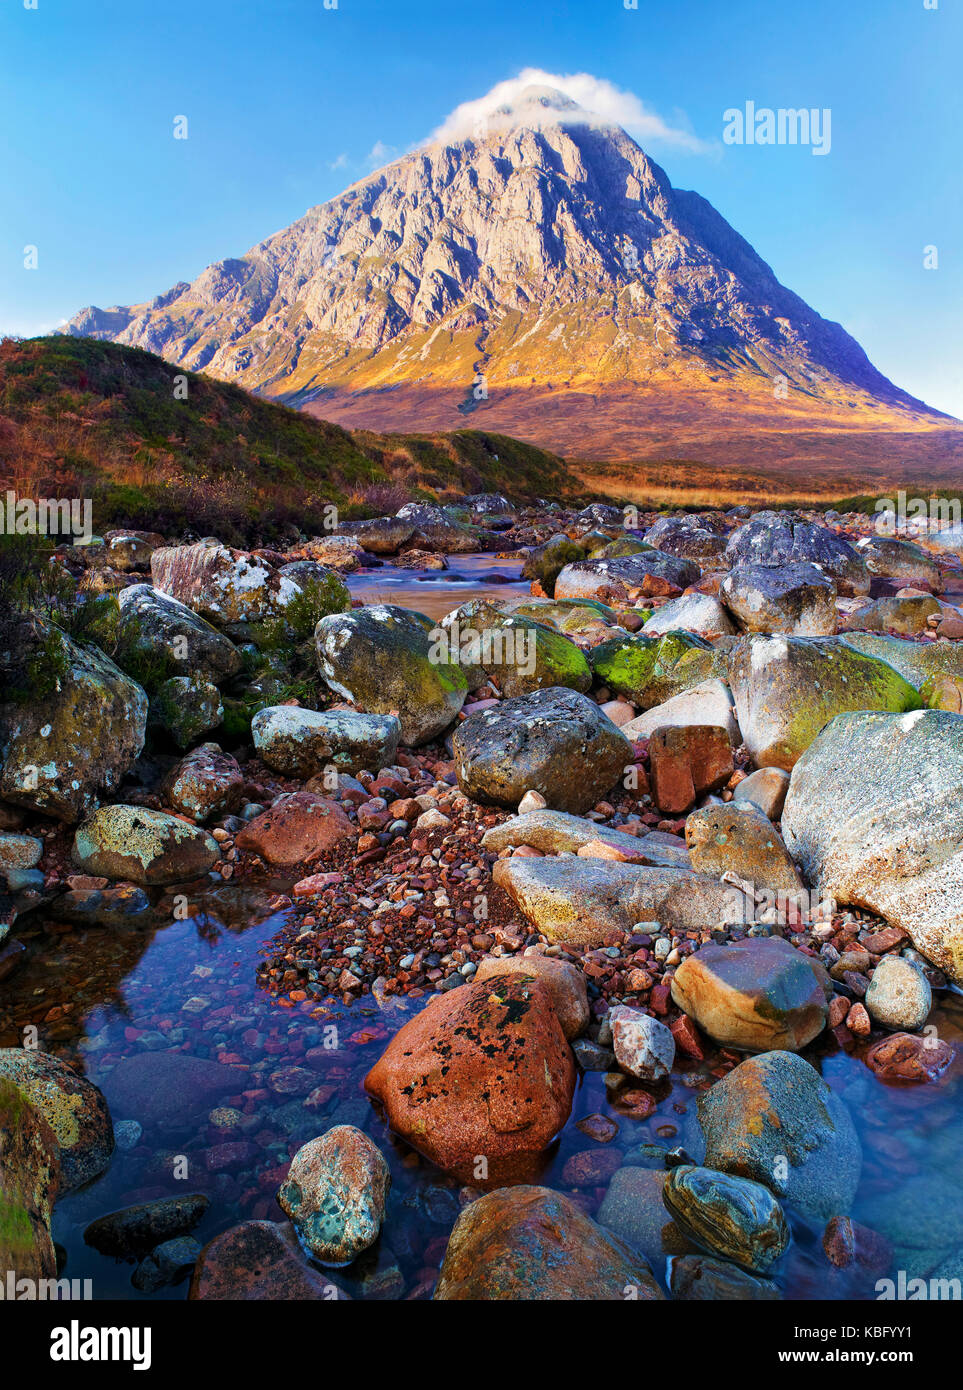 Una soleggiata vista del famoso monte buachaille etive mor in Rannoch Moor nelle highlands scozzesi Foto Stock